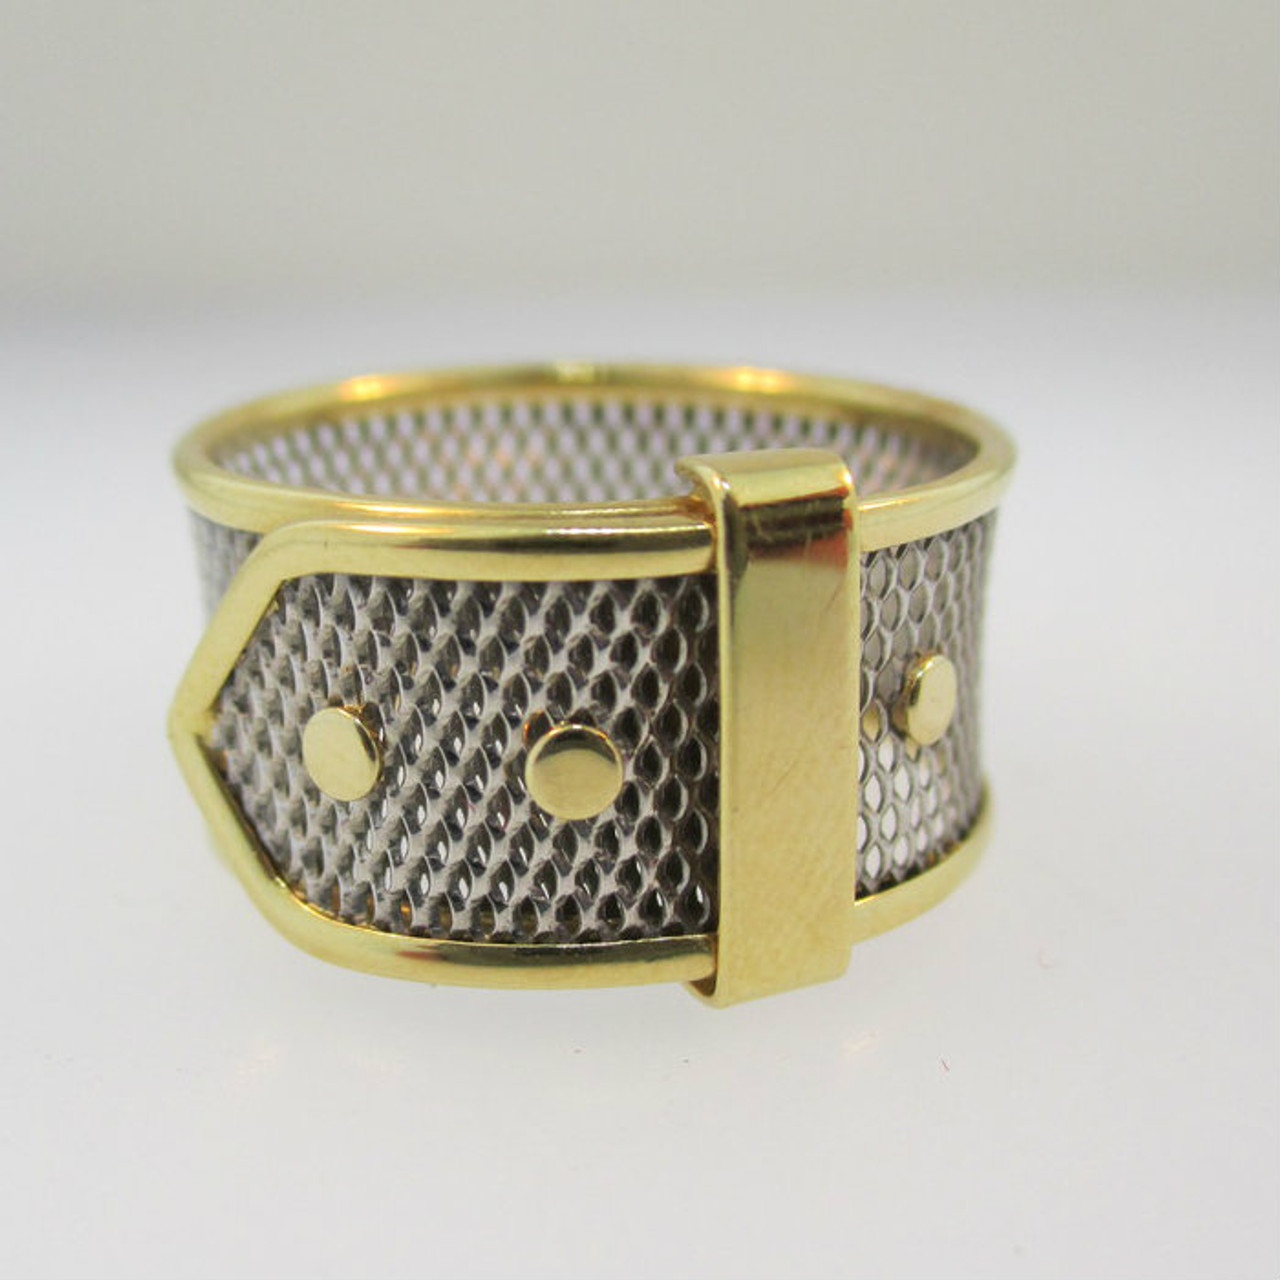 Belt Buckle Wide Band 18K Gold Vintage Diamond Ring